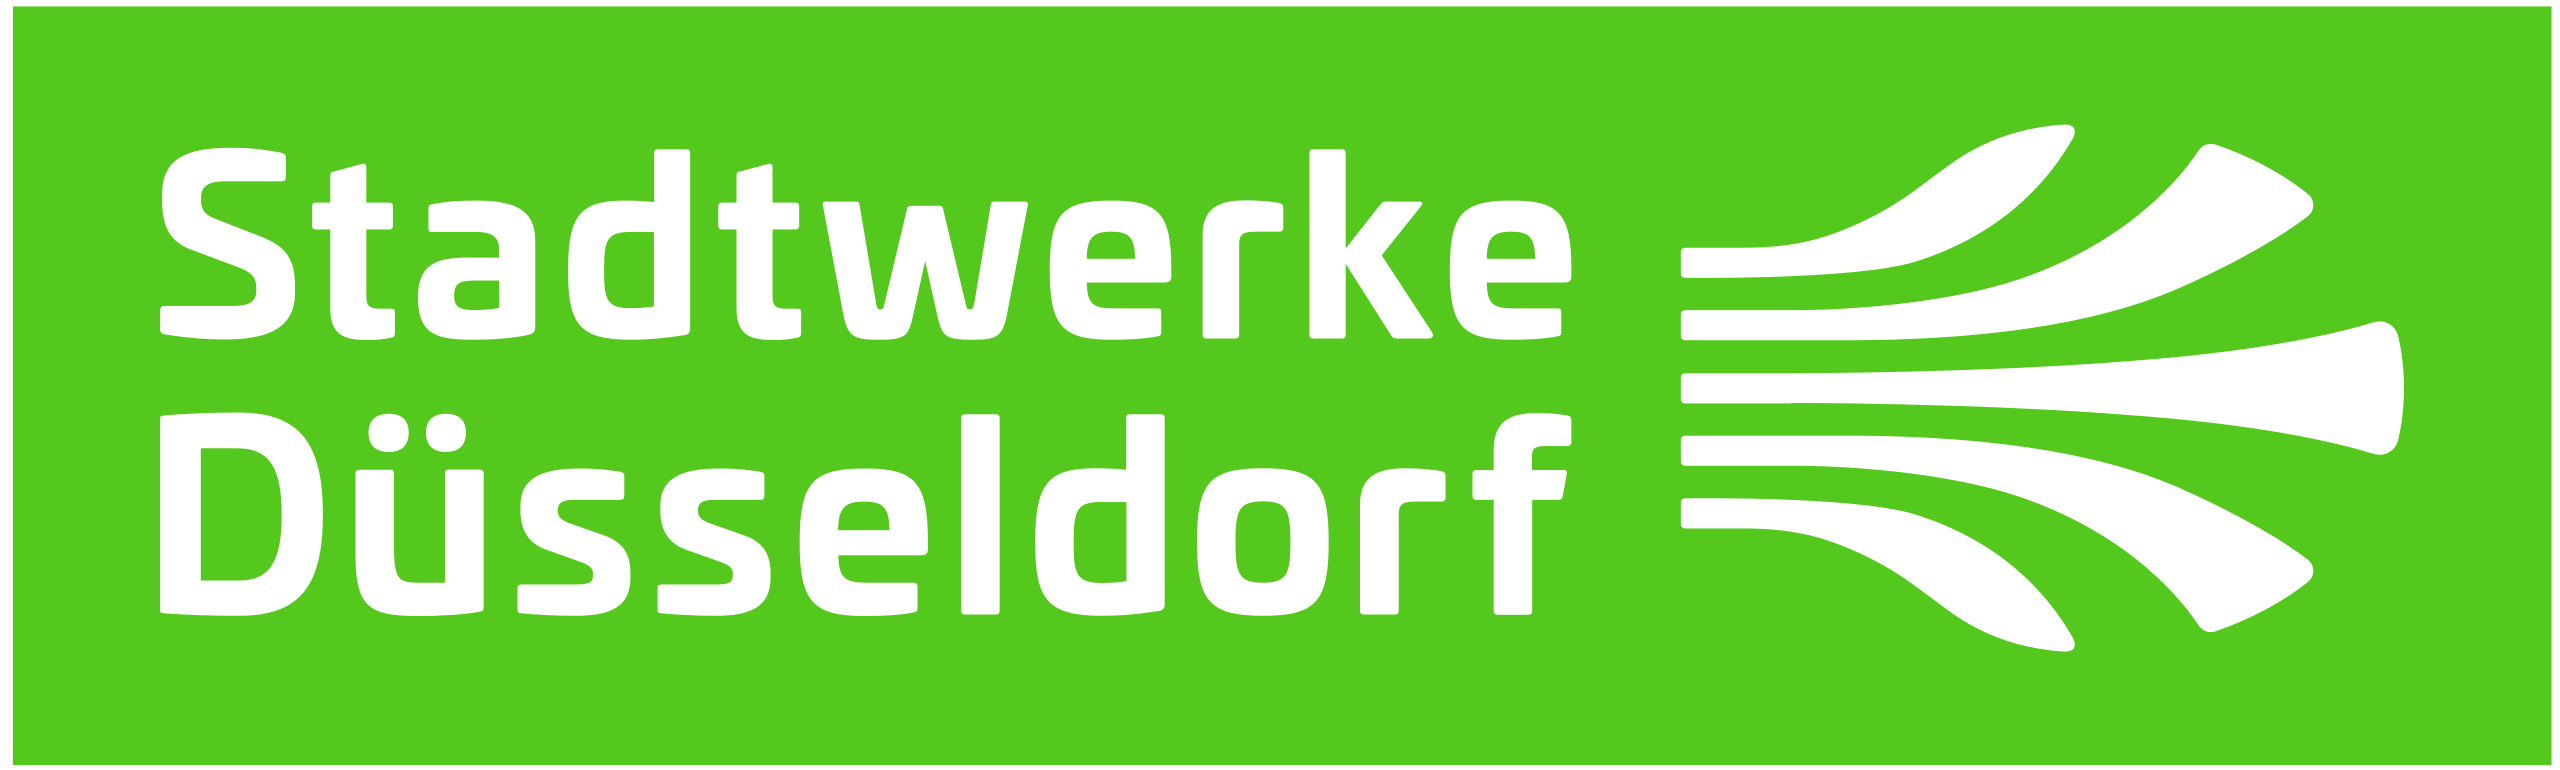 Stadtwerke Duesseldorf Logo